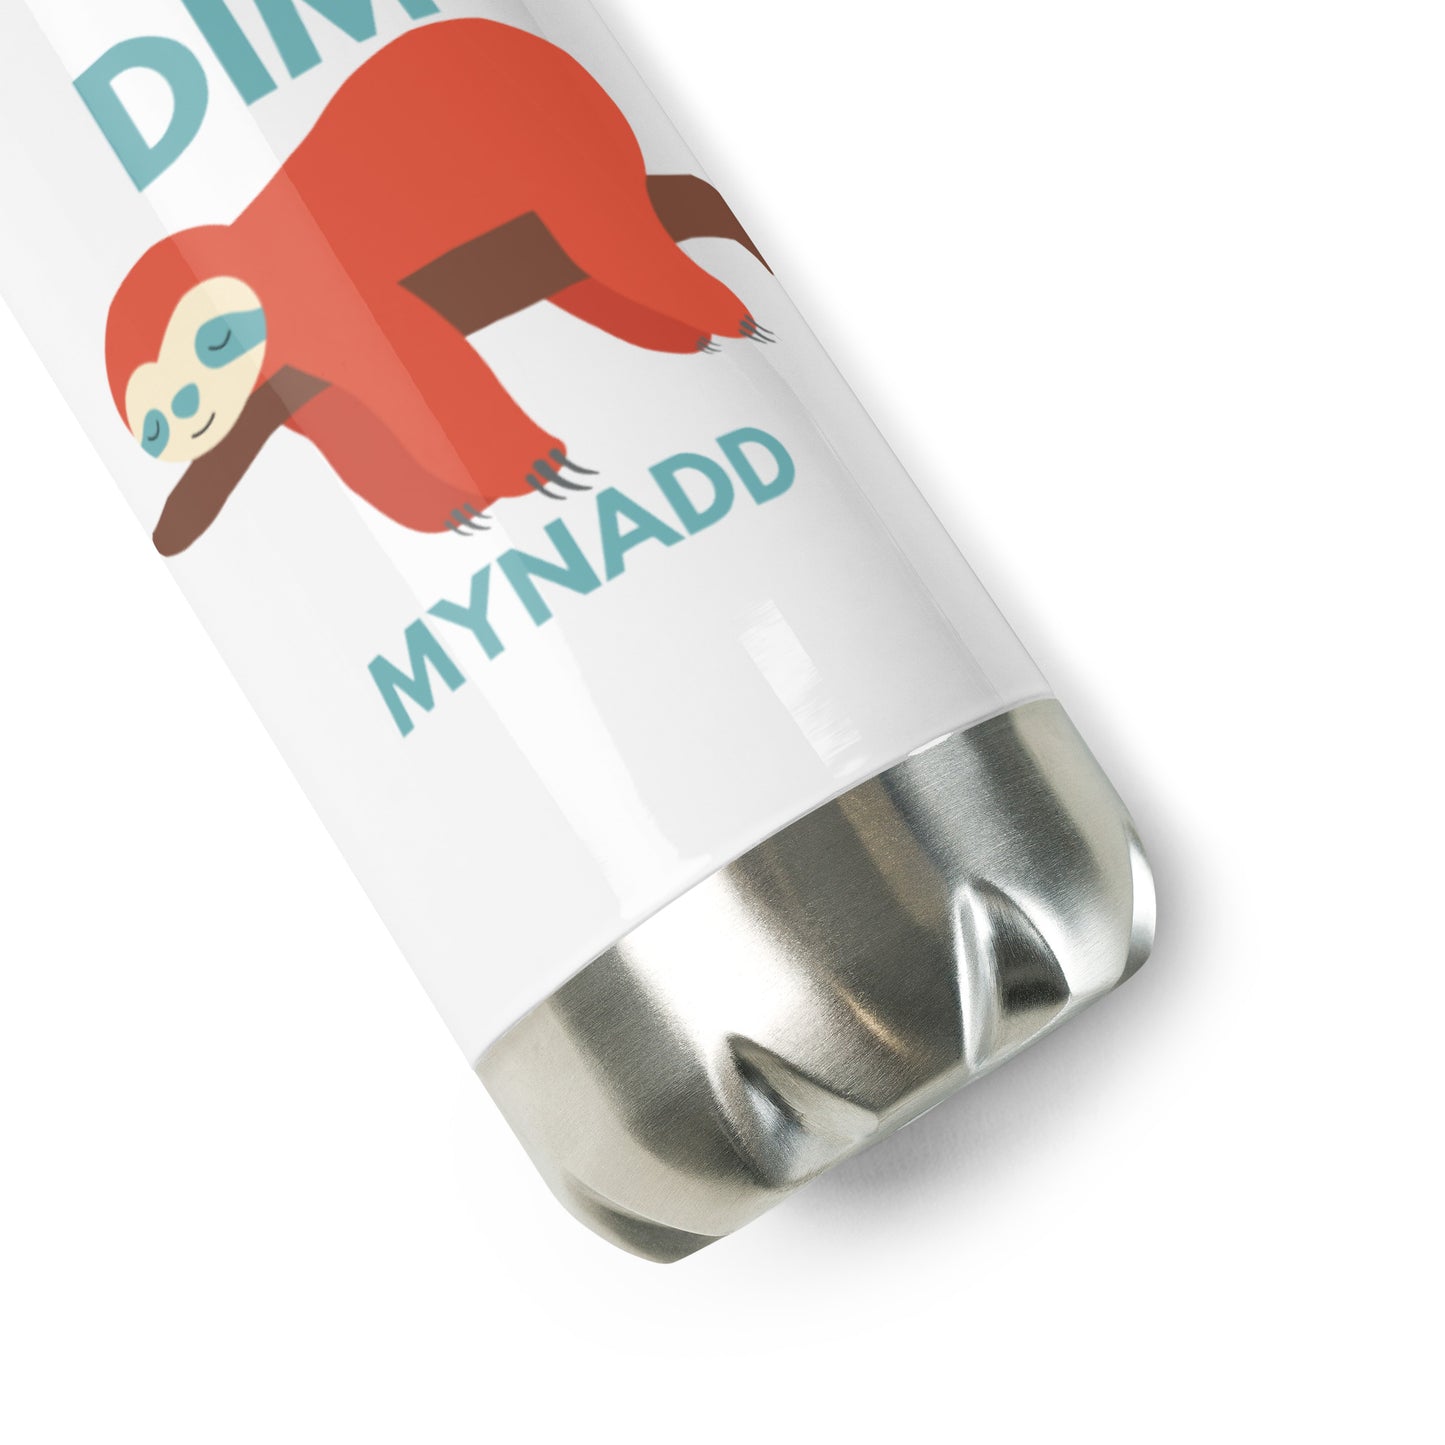 Dim - Mynadd - Stainless Steel Water Bottle